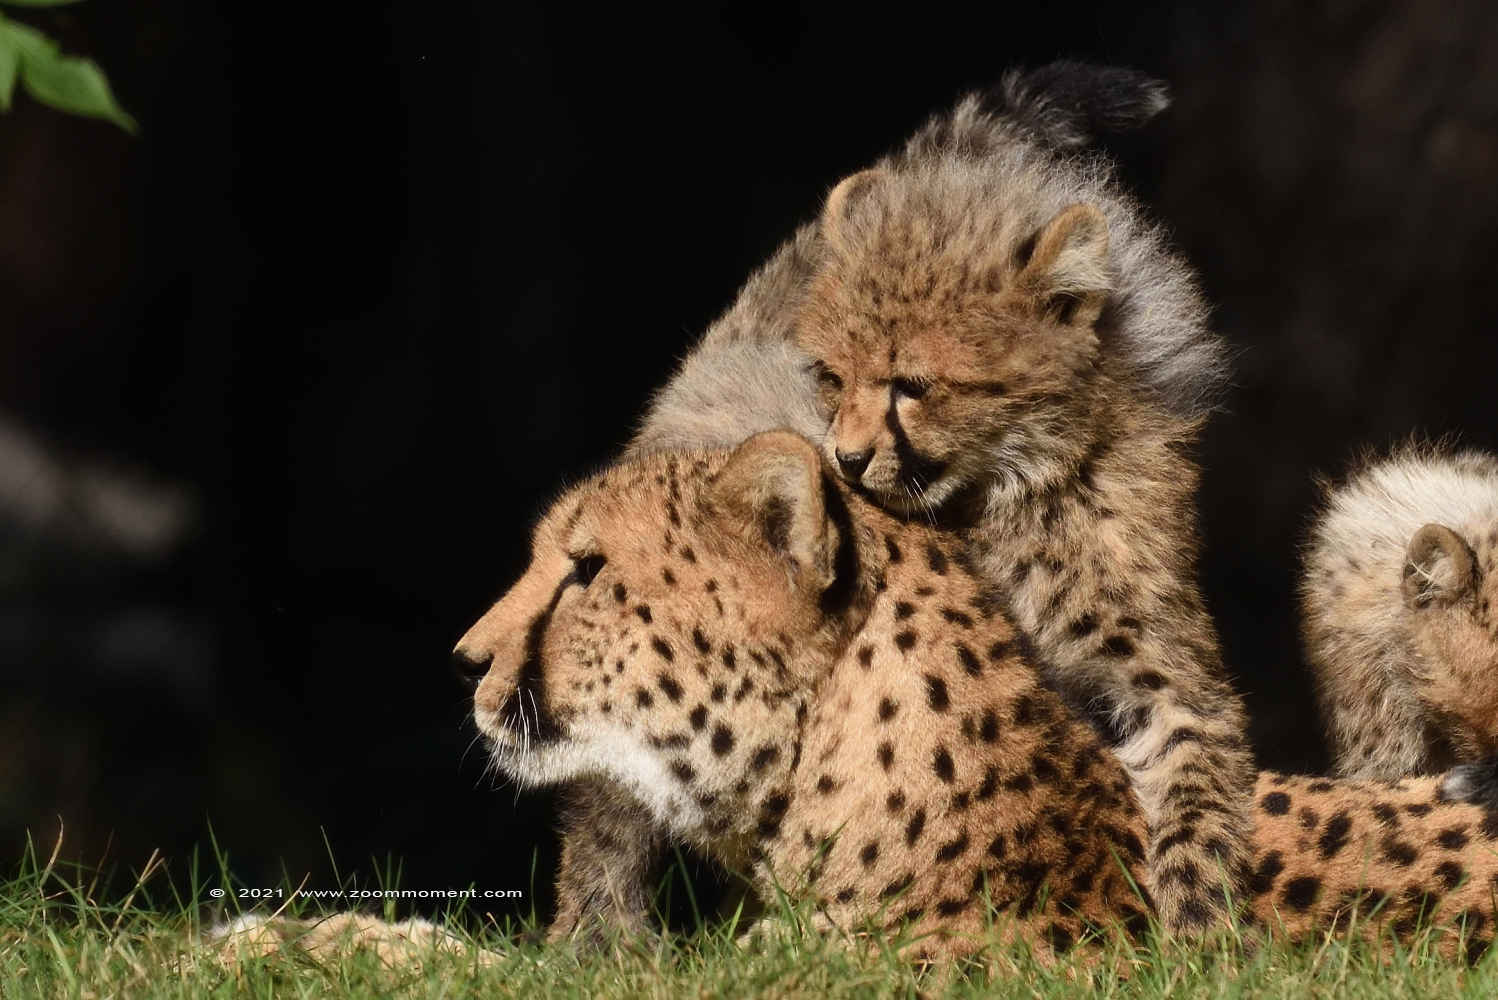 jachtluipaard ( Acinonyx jubatus ) cheetah
Welpen, geboren augustus 2021, op de foto ongeveer 5 weken oud
Cubs, born august 2021, on the picture about 5 weeks old
Keywords: Safaripark Beekse Bergen jachtluipaard Acinonyx jubatus cheetah